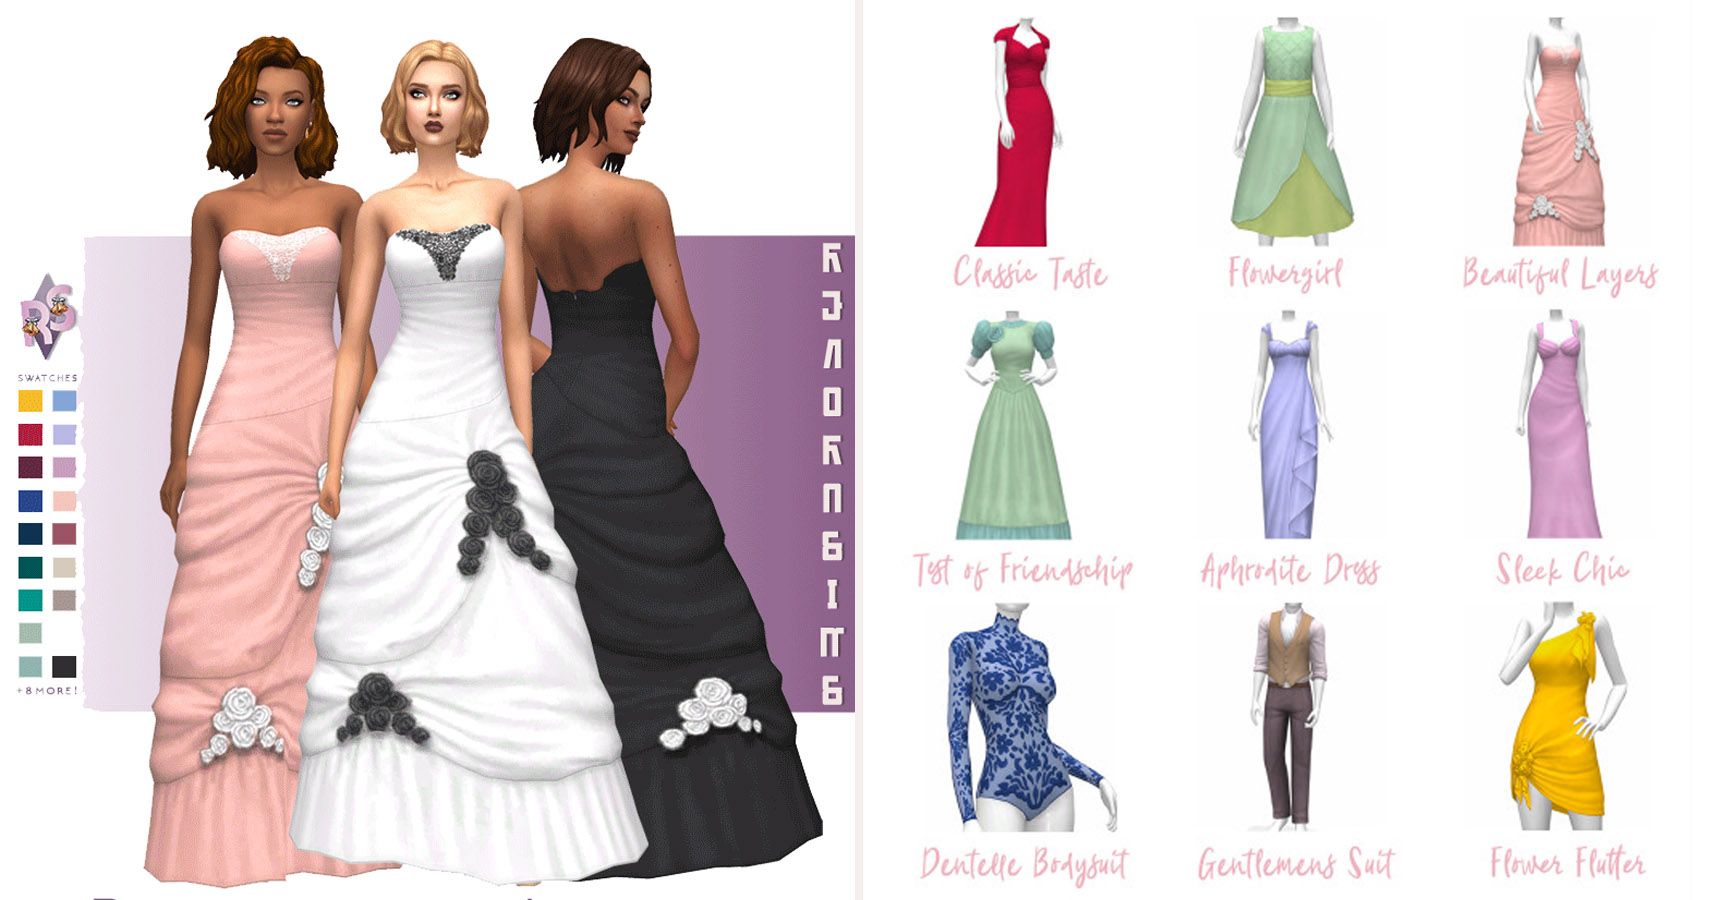 left side 3 full lengths dresses on sims. Right side 9 dress designs.